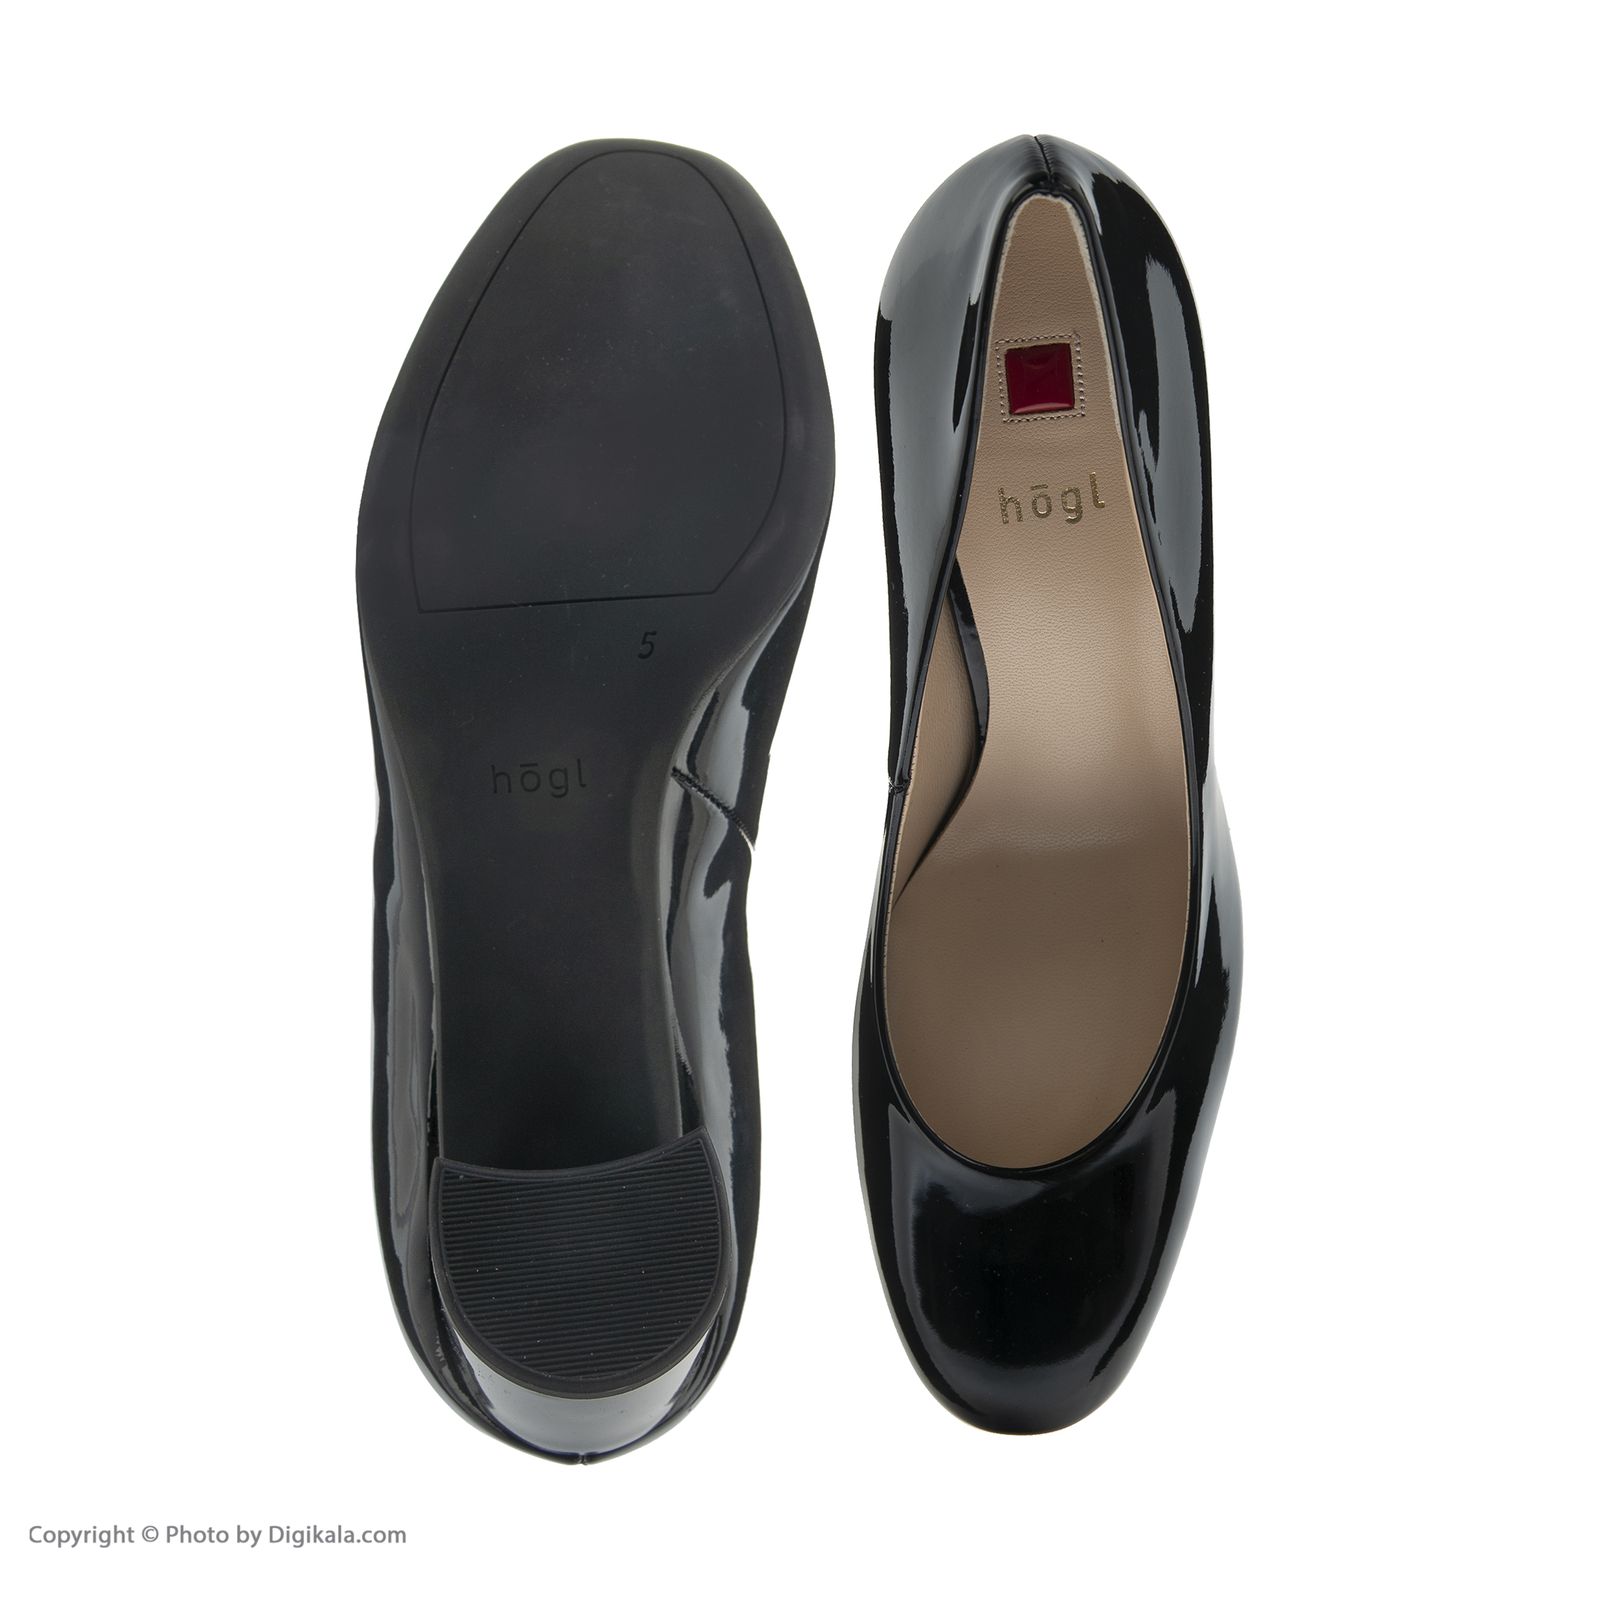 کفش زنانه هوگل مدل 0-185004-0100 - مشکی - 8